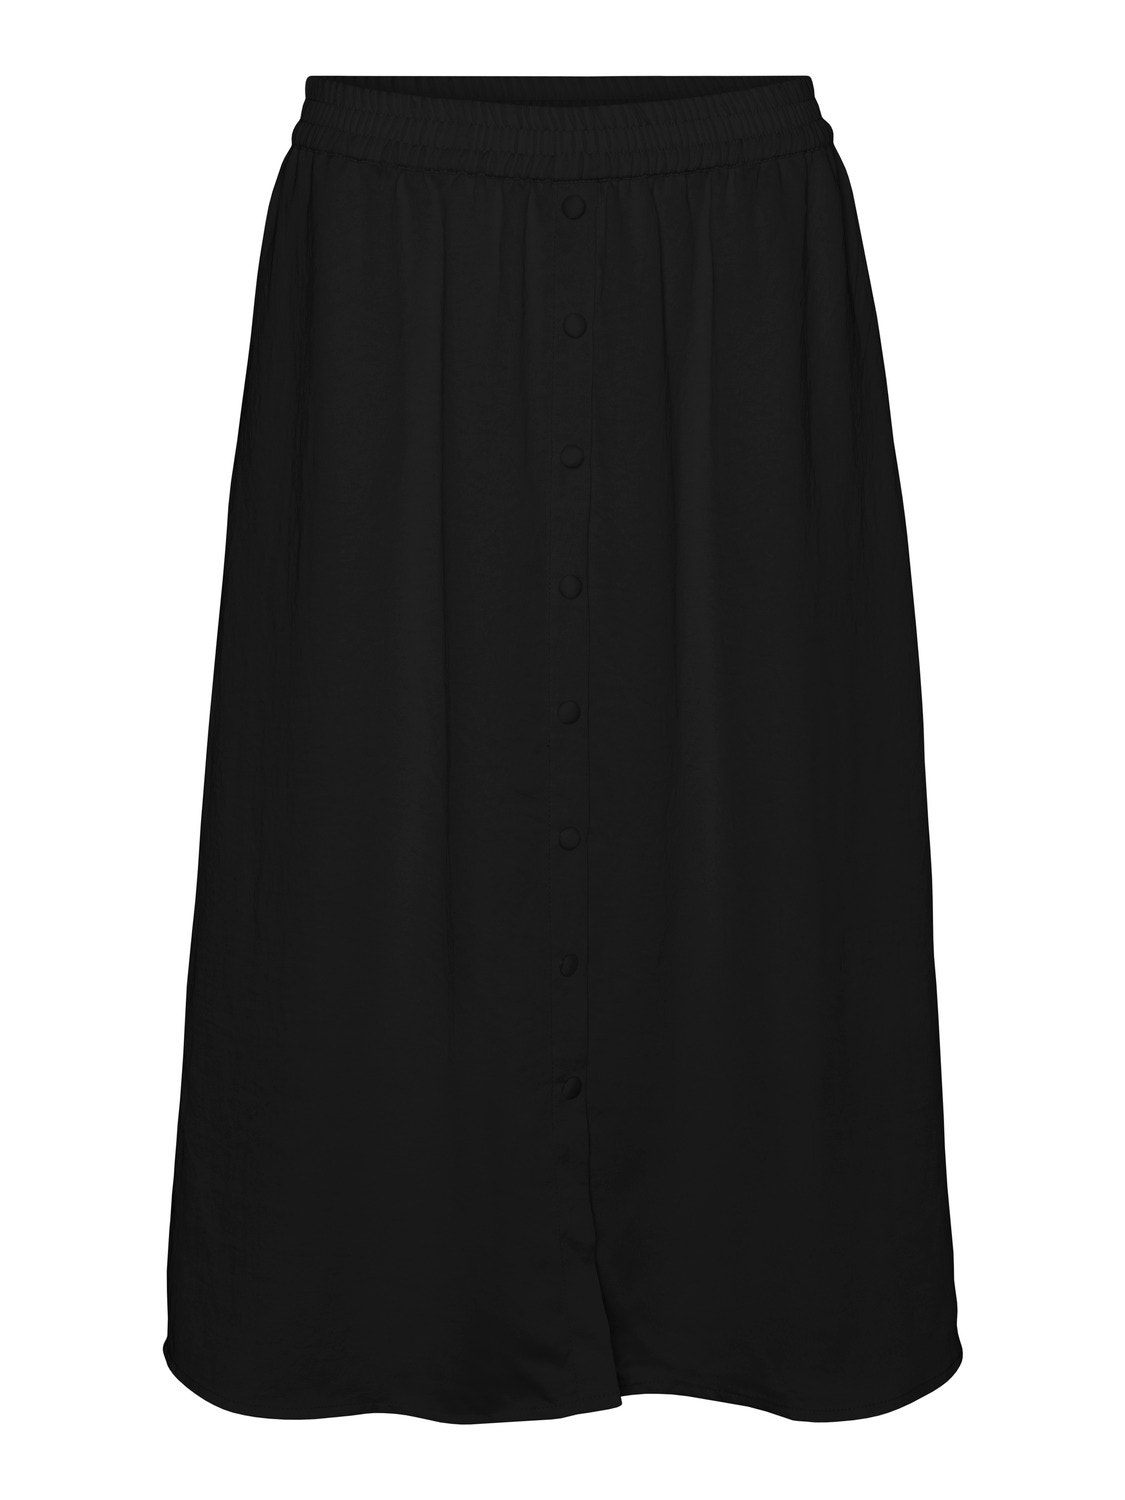 Vero Moda VMSUNNY Midi skirt -Black - 10301565